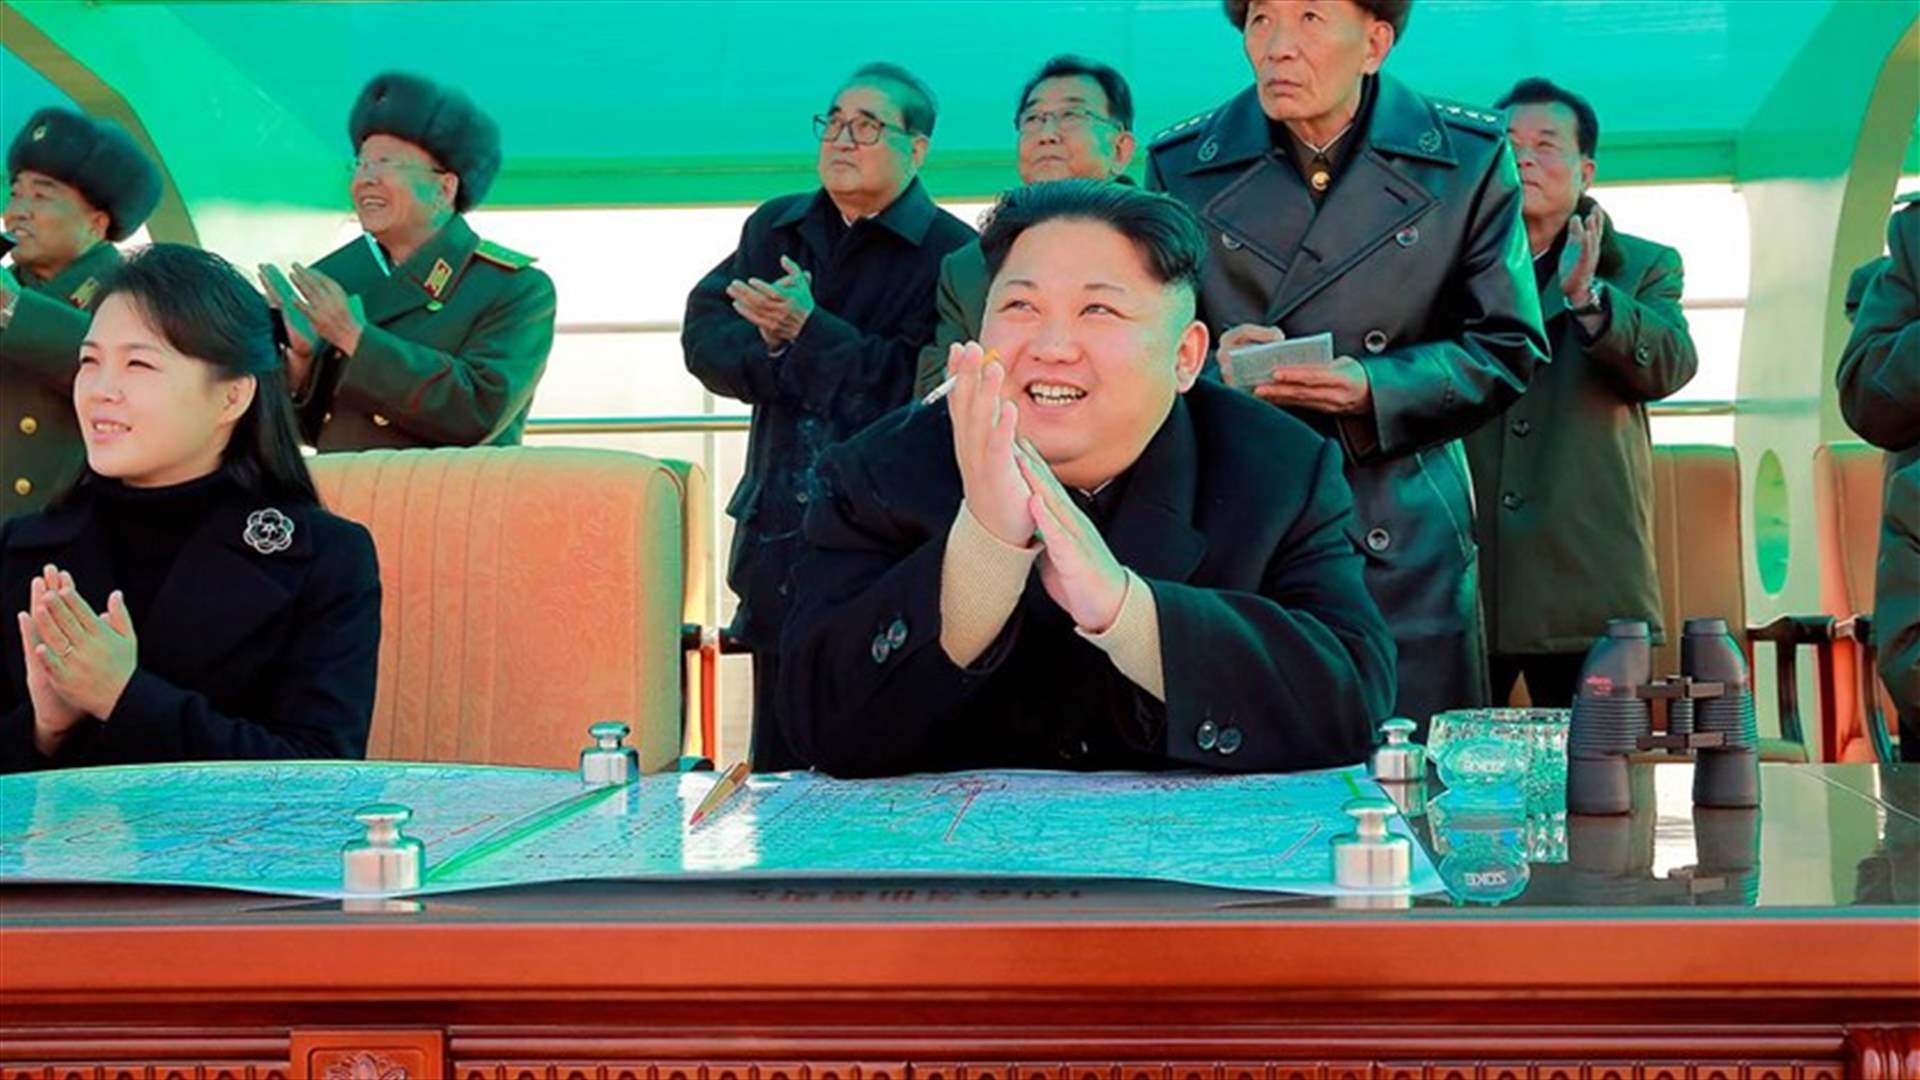 بعد غياب 9 أشهر... السيّدة الأولى لكوريا الشماليّة تظهر إلى العلن 